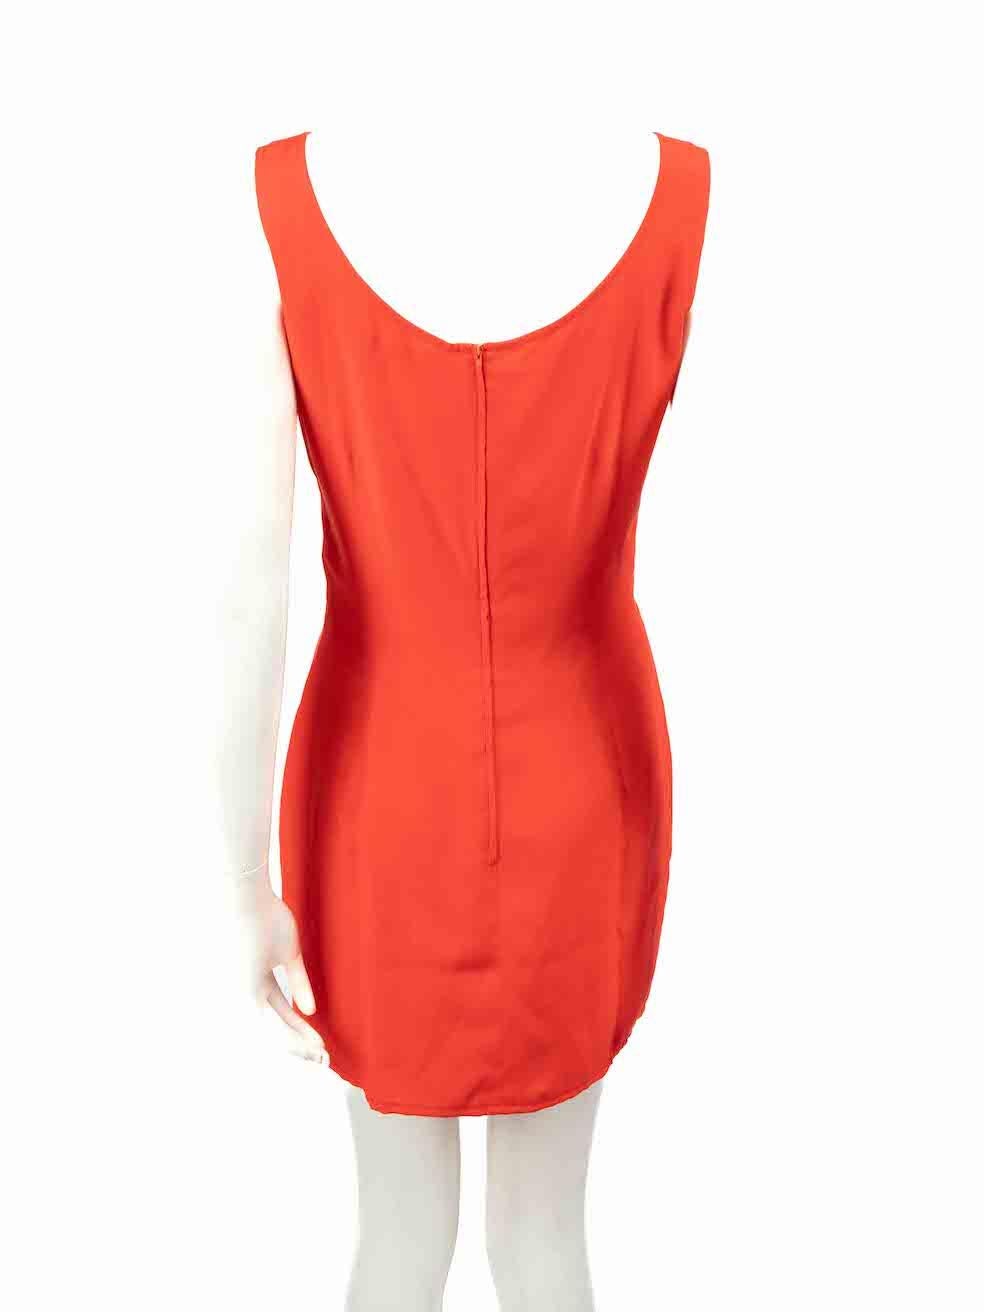 Valentino Garavani Orange Silk Sleeveless Mini Dress Size M In Excellent Condition For Sale In London, GB